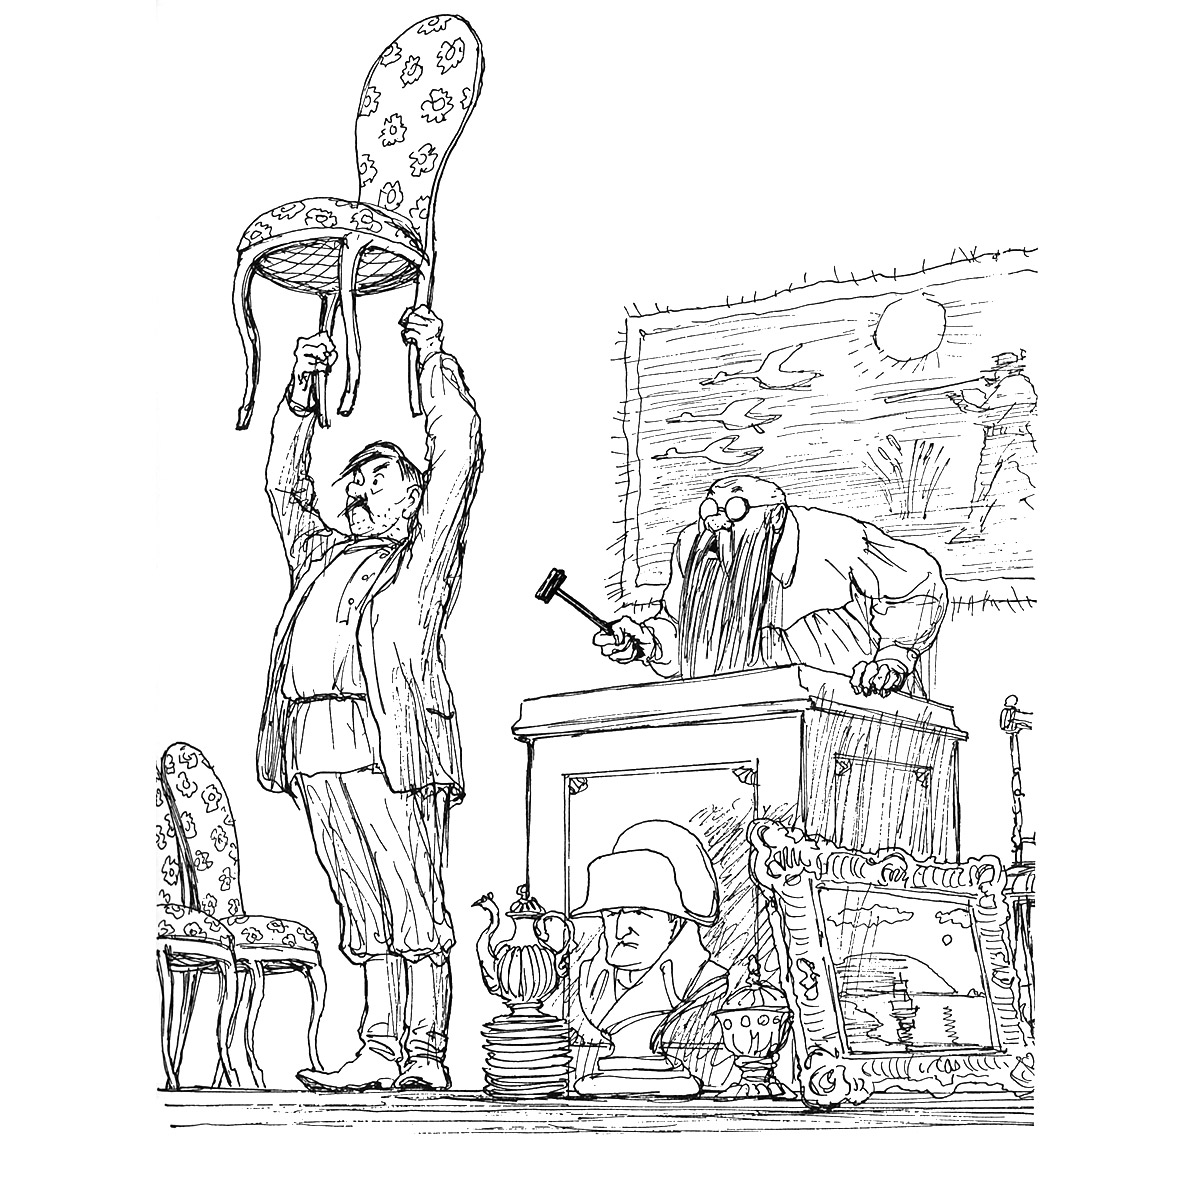 12 стульев произведение. Иллюстрации к 12 стульям Ильфа и Петрова. 12 Стульев иллюстрации Кукрыниксы. Книга 12 стульев с иллюстрациями Кукрыниксов.